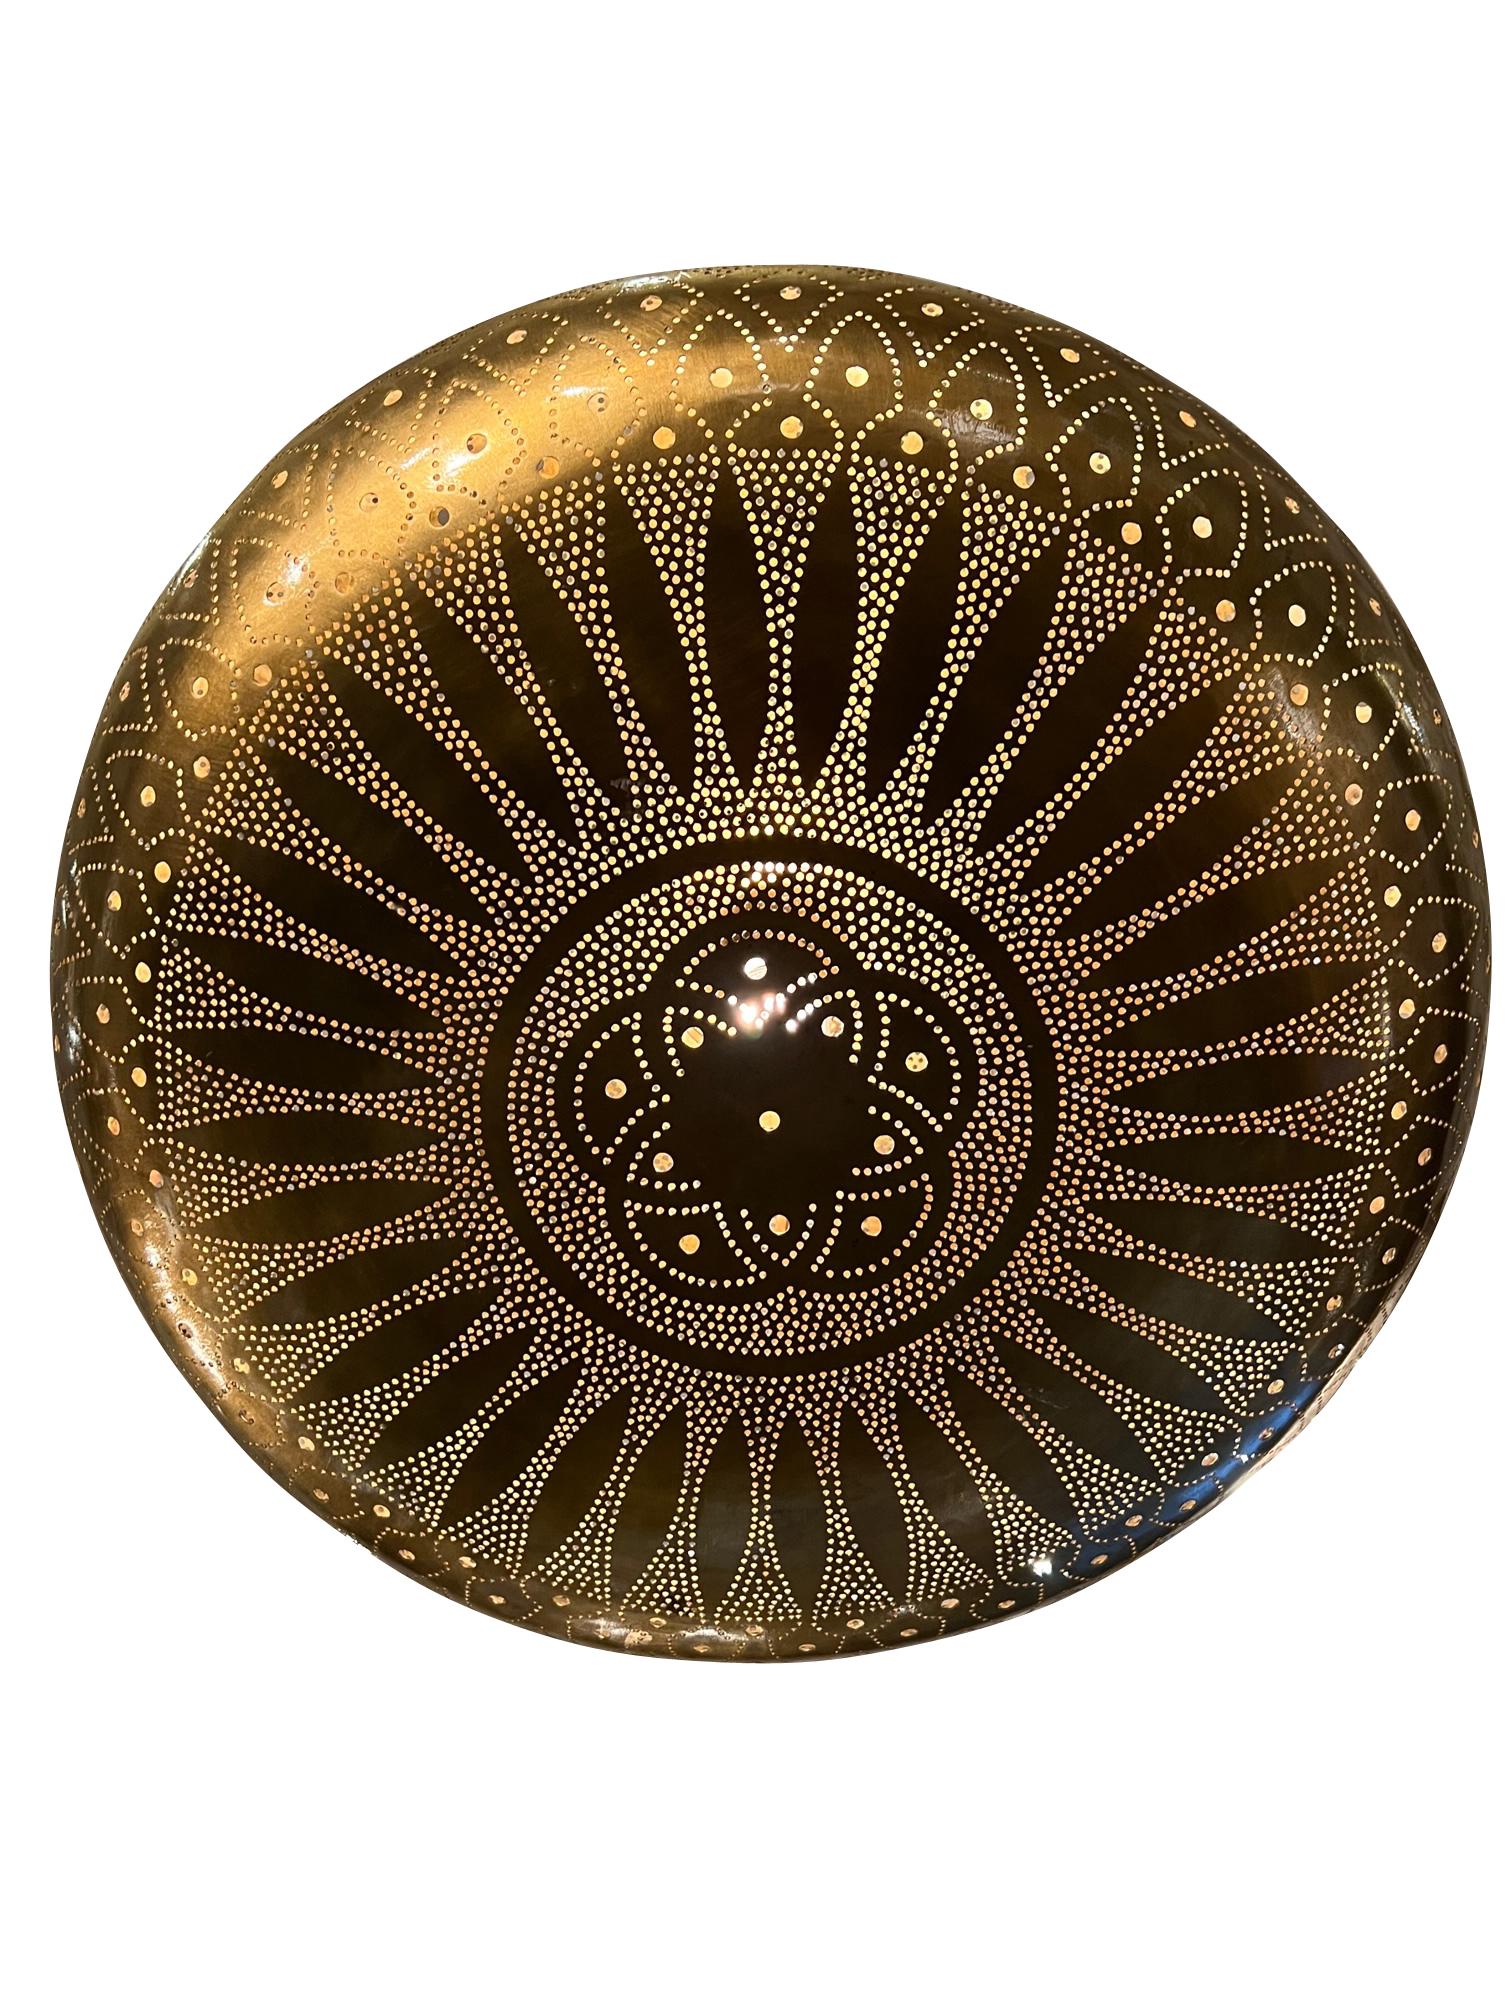 Zeitgenössischer marokkanischer Kronleuchter aus durchbrochener Bronze.
Traditionelles dekoratives Design.
Sphärische Form.
Höhe der Halterung 13